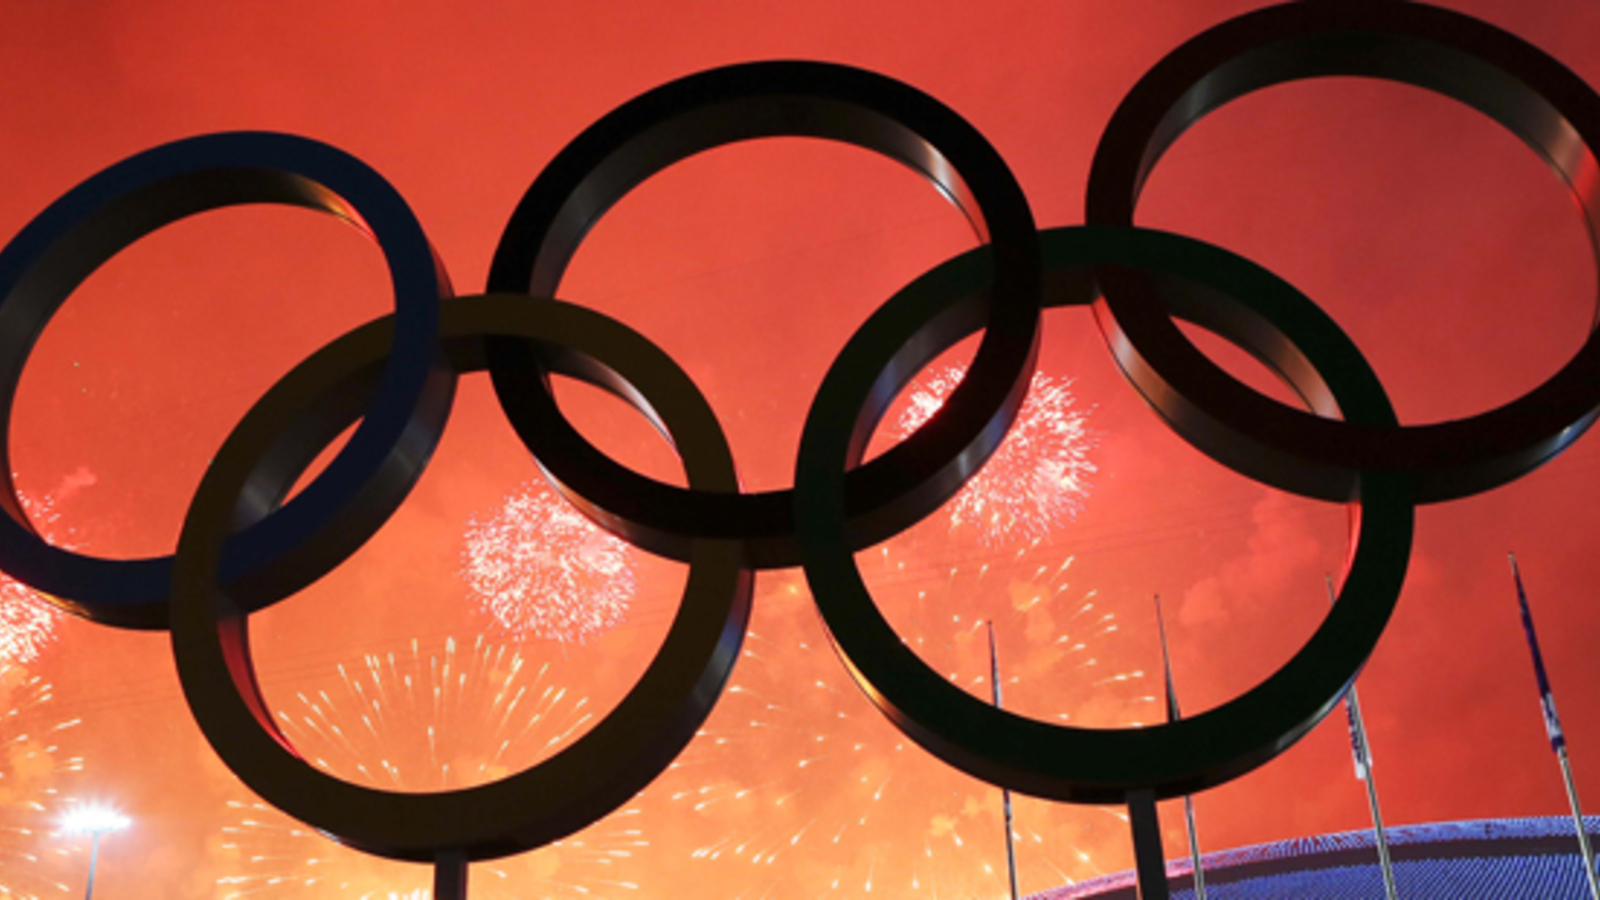 Deutschland bewirbt sich um Olympia 2024 sport24.at